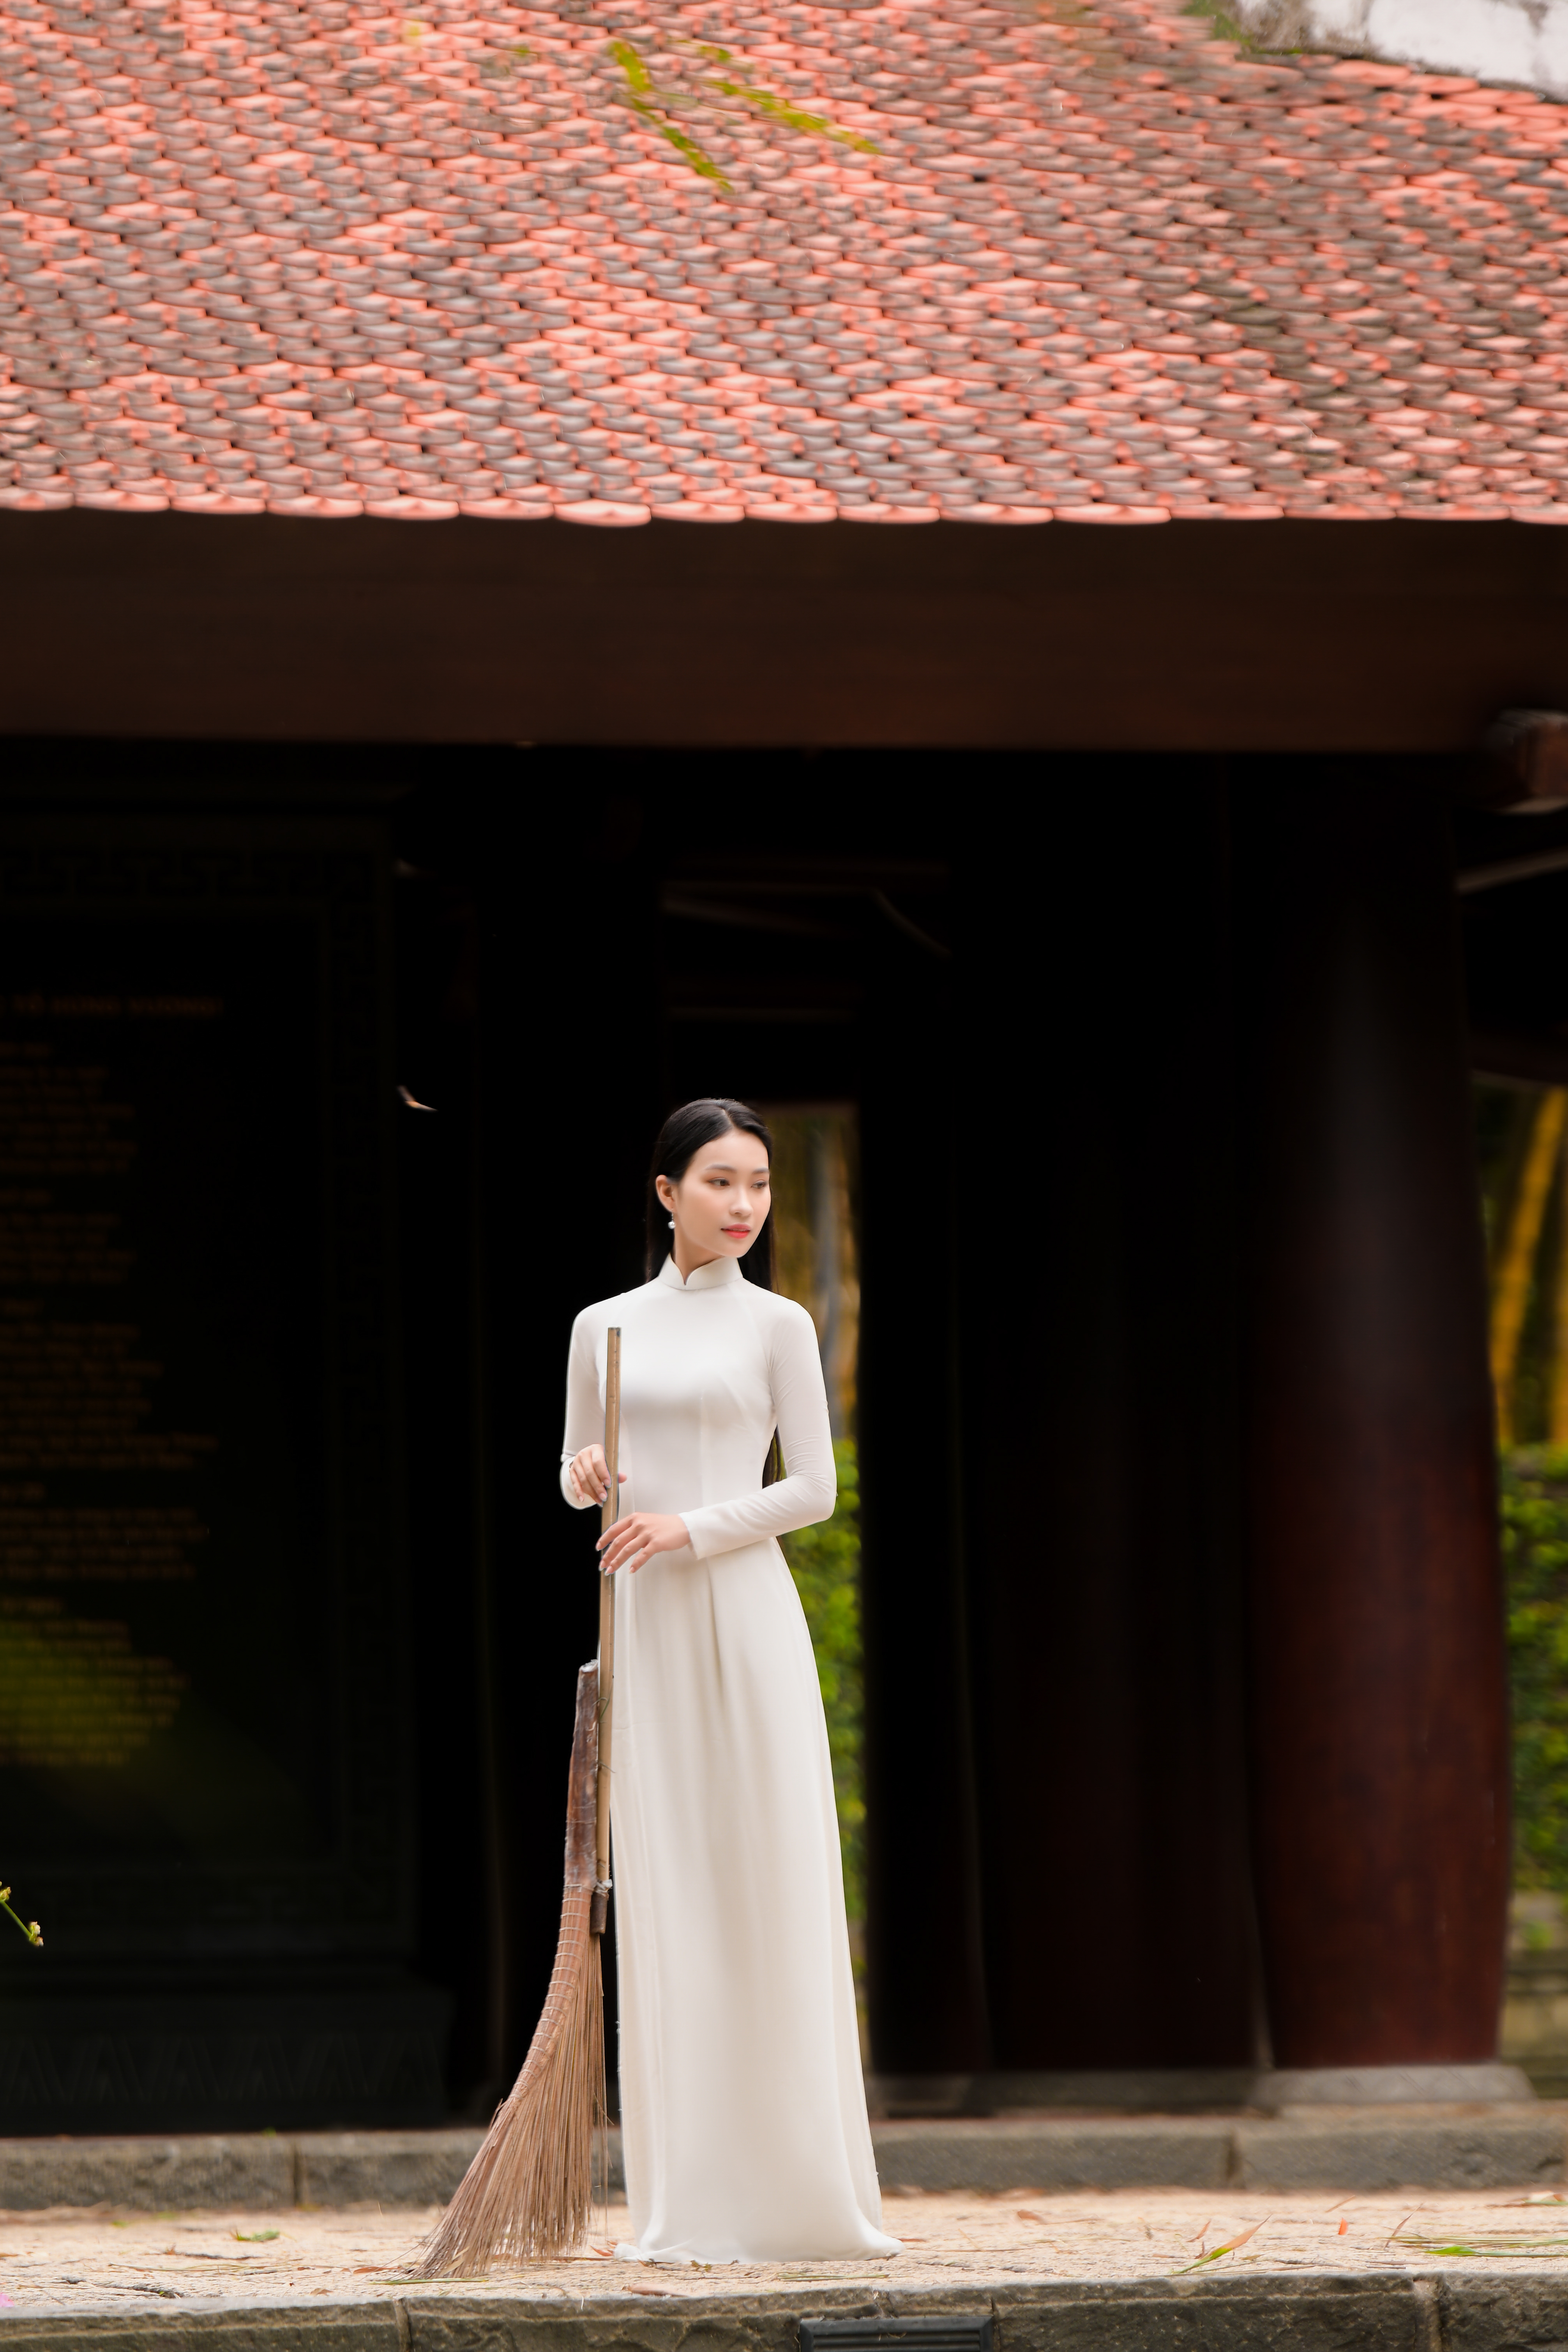 Đền Hùng và áo dài là hai trong những biểu tượng đẹp đẽ nhất của Việt Nam.